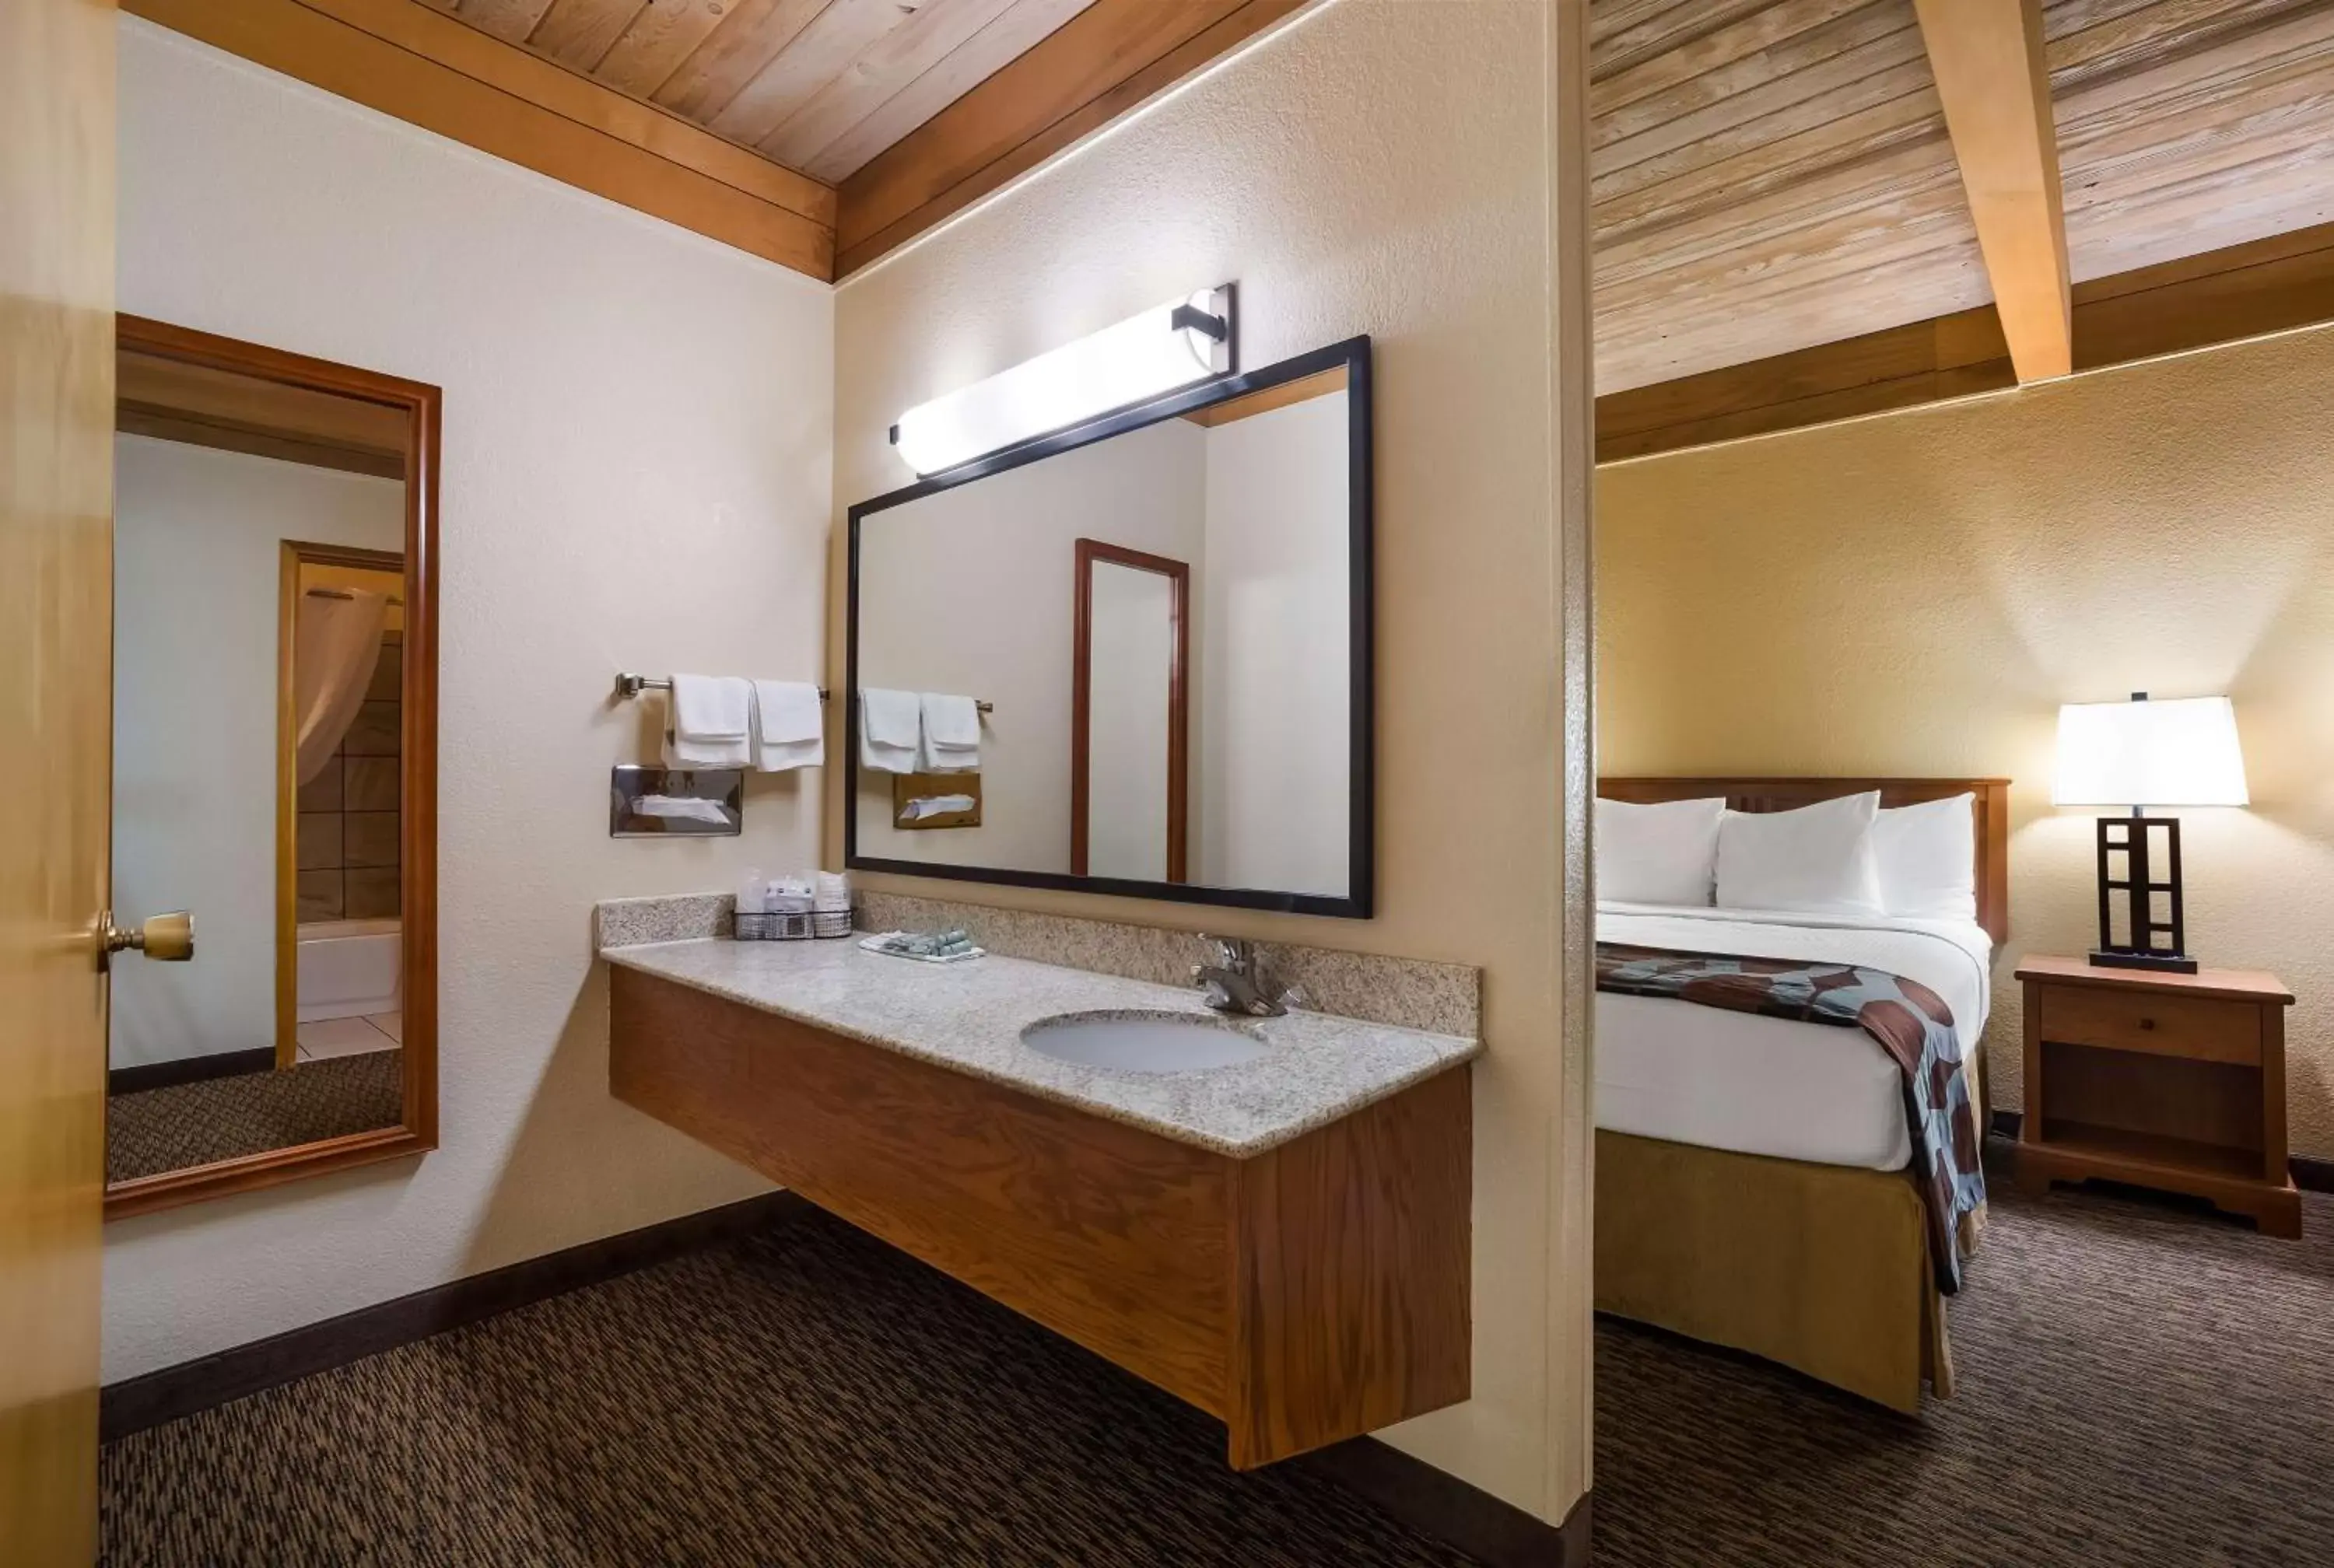 Bedroom, Bathroom in Best Western Plains Motel